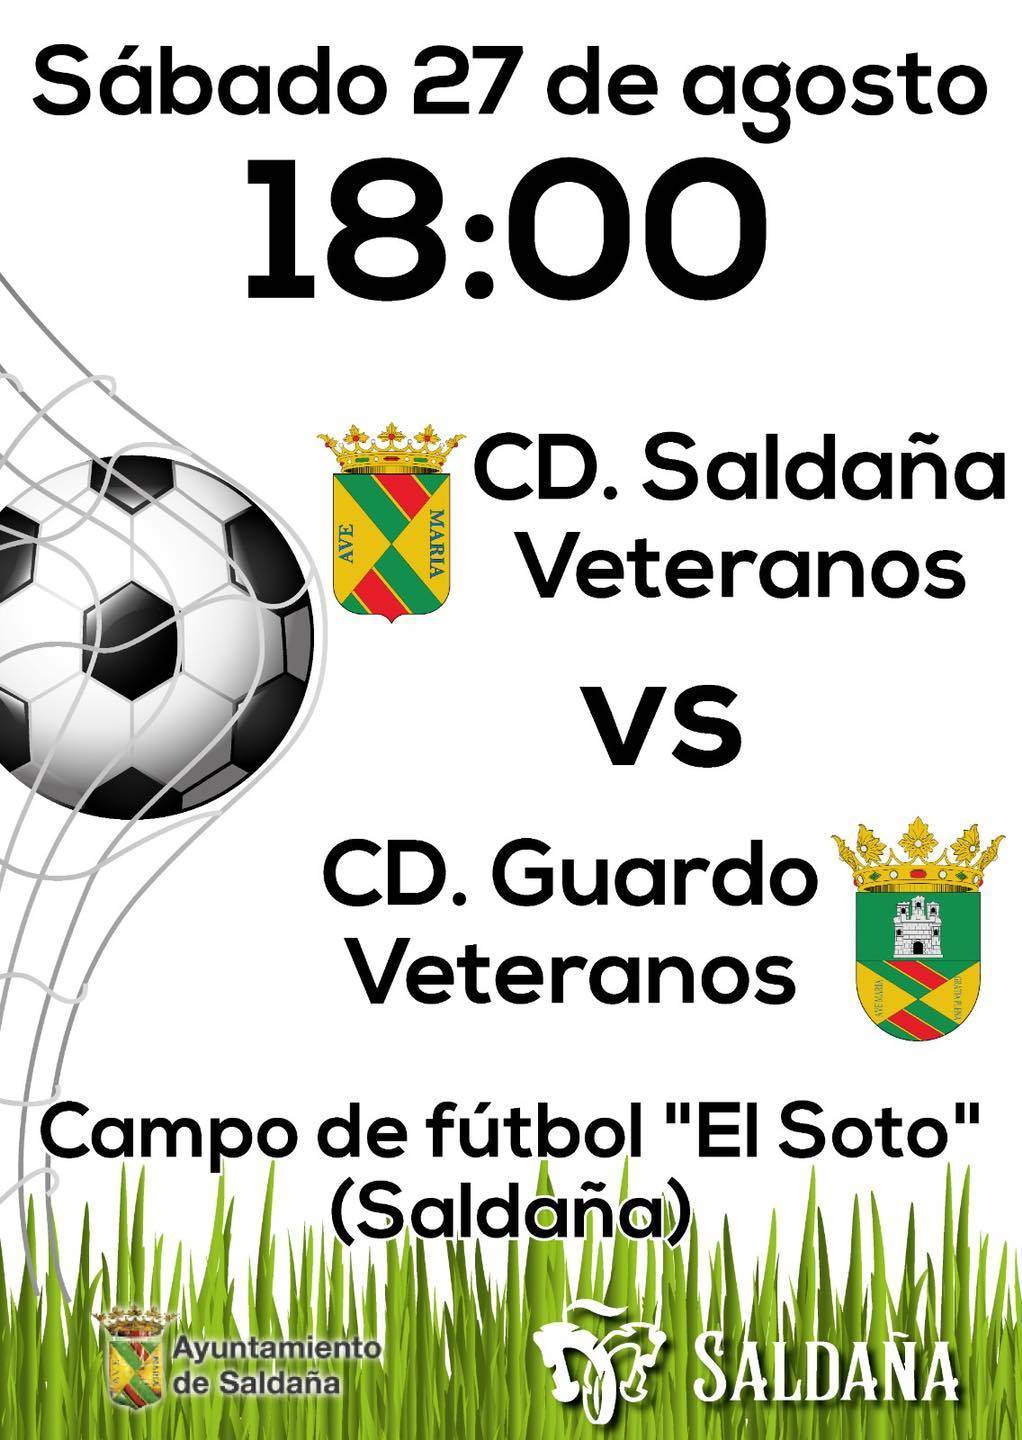 CD Saldaños Veteranos - CD Guardo Veteranos (agosto 2022) - Saldaña (Palencia)